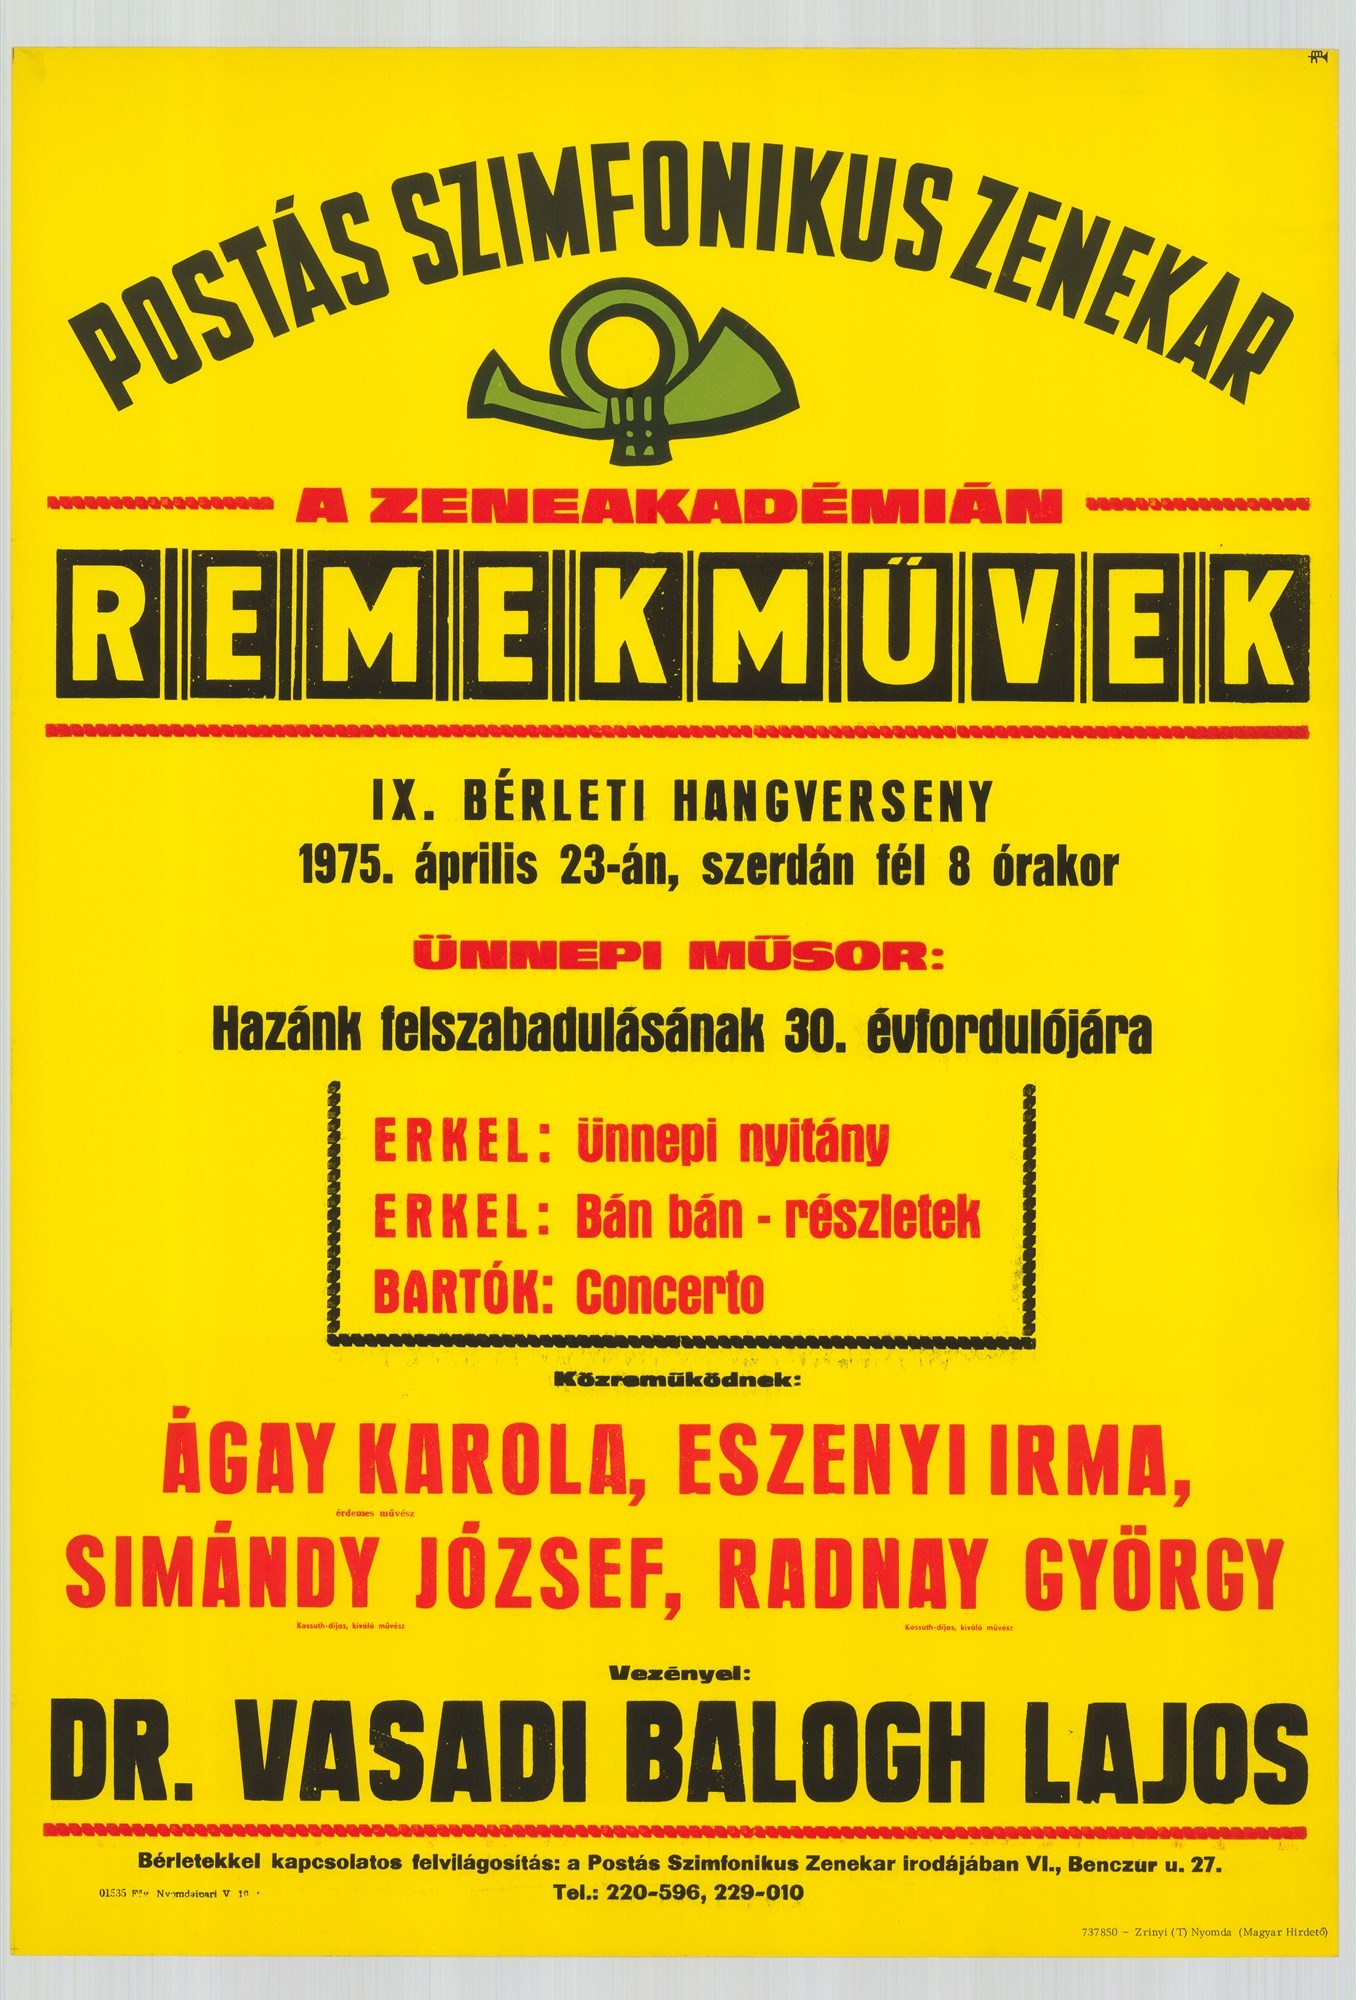 Plakát - Postás Szimfonikus Zenekar a Zeneakadémián, Remekművek, 1975 (Postamúzeum CC BY-NC-SA)